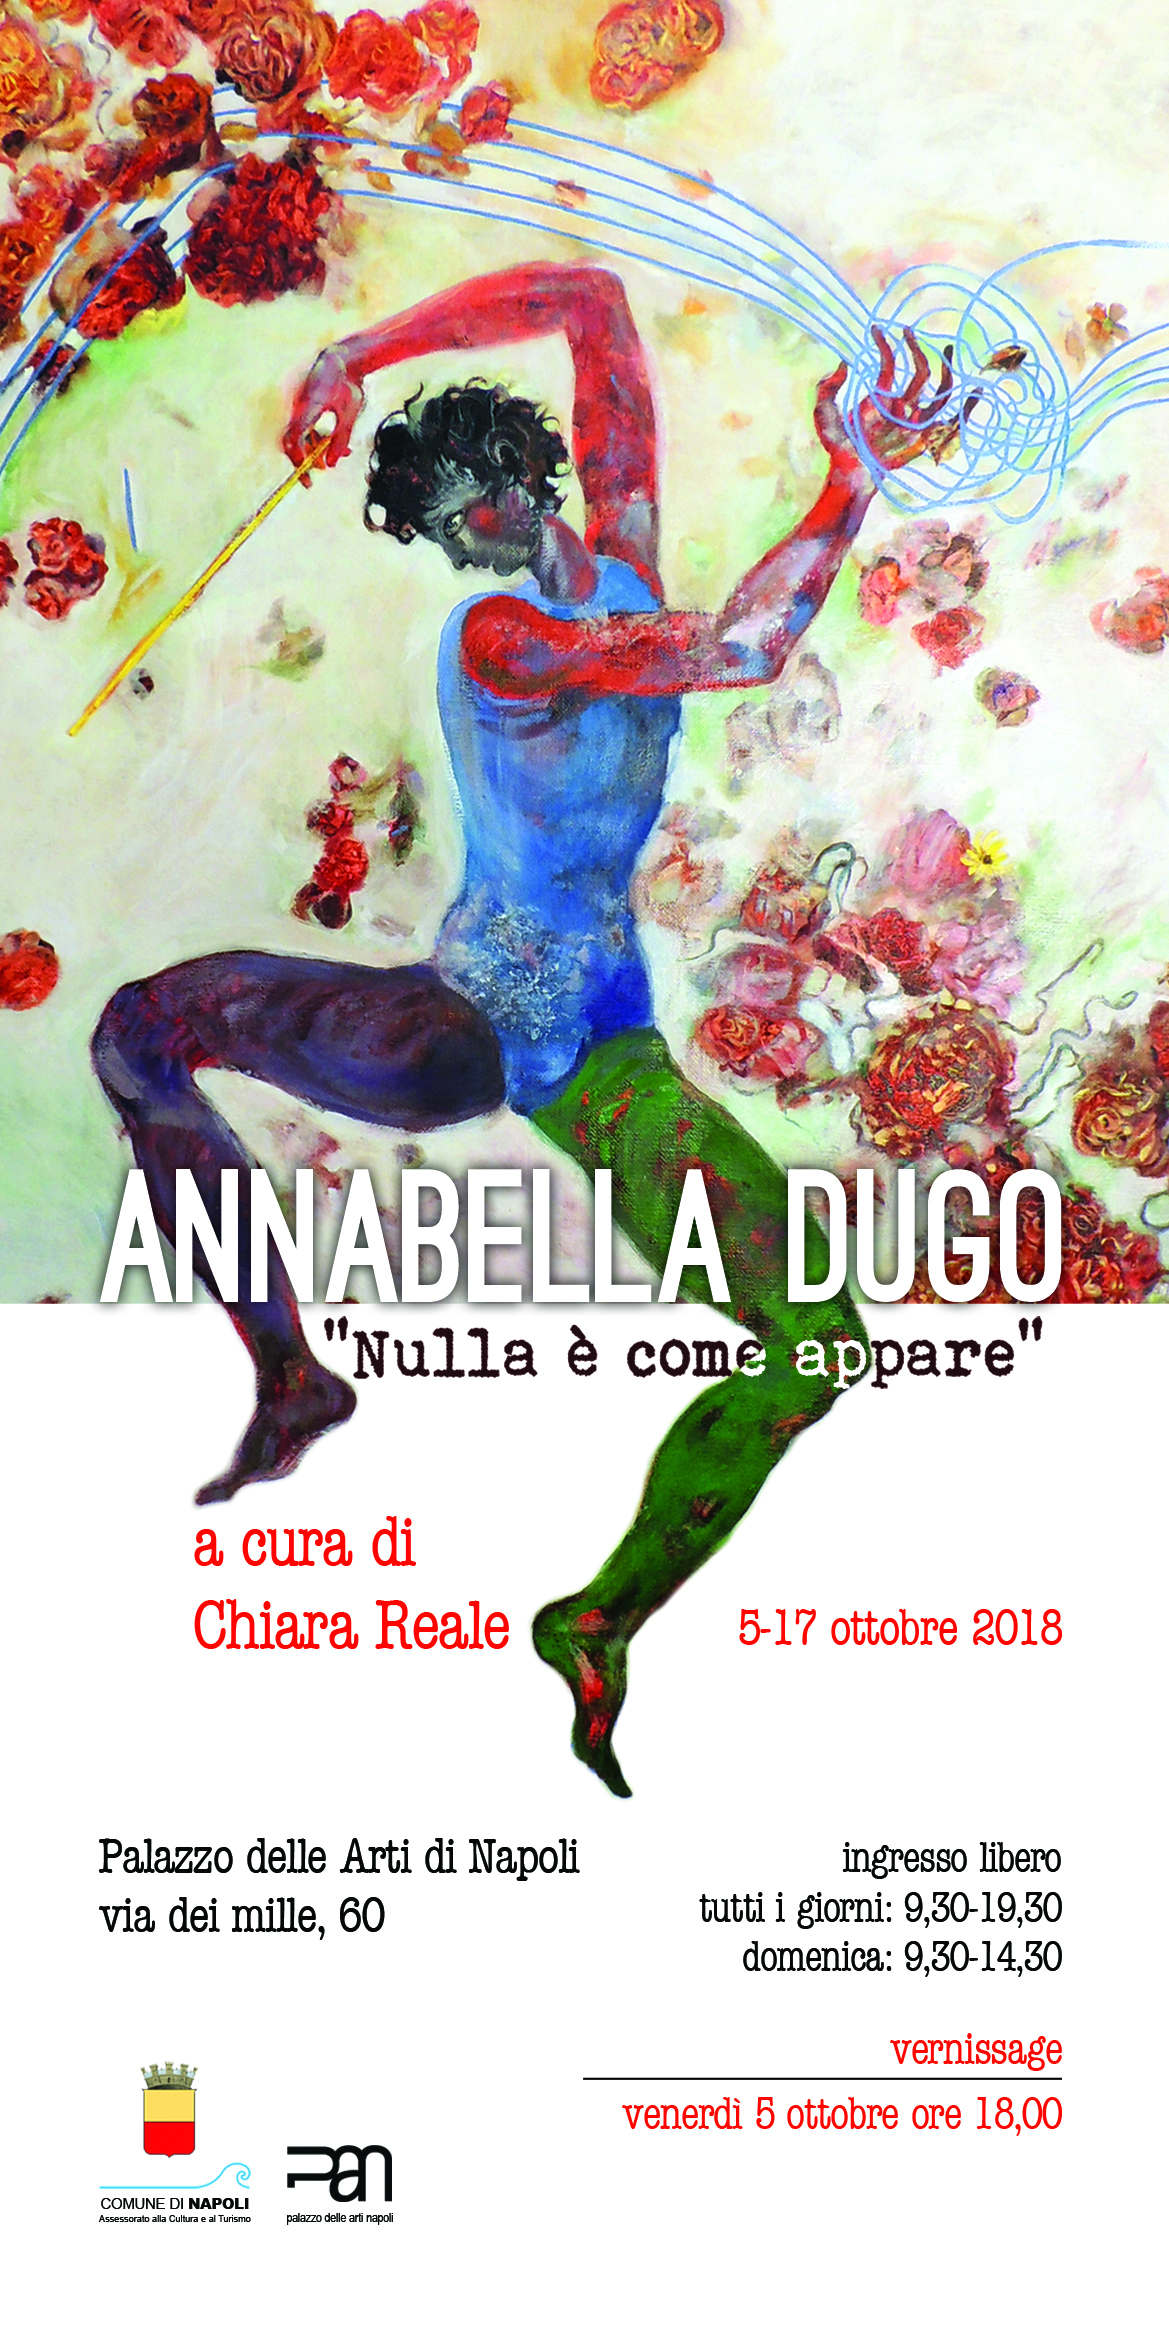 Annabella Dugo al Pan di Napoli, mostra personale di pittura dal 5 al 17 ottobre 